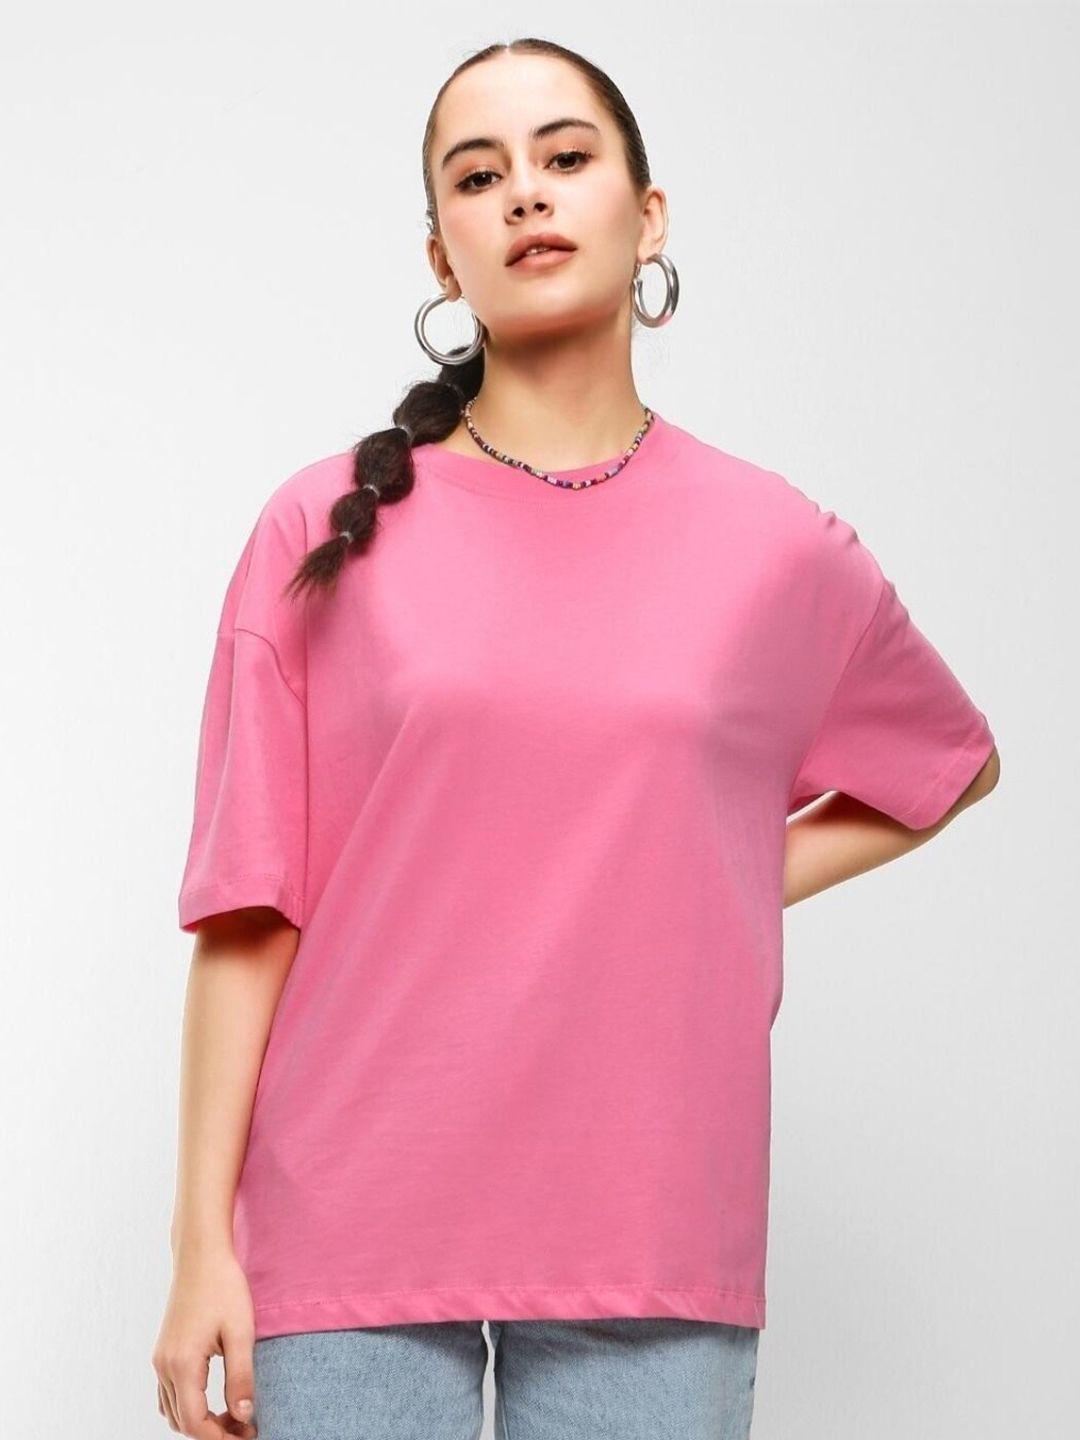 bewakoof-women-oversized-t-shirt